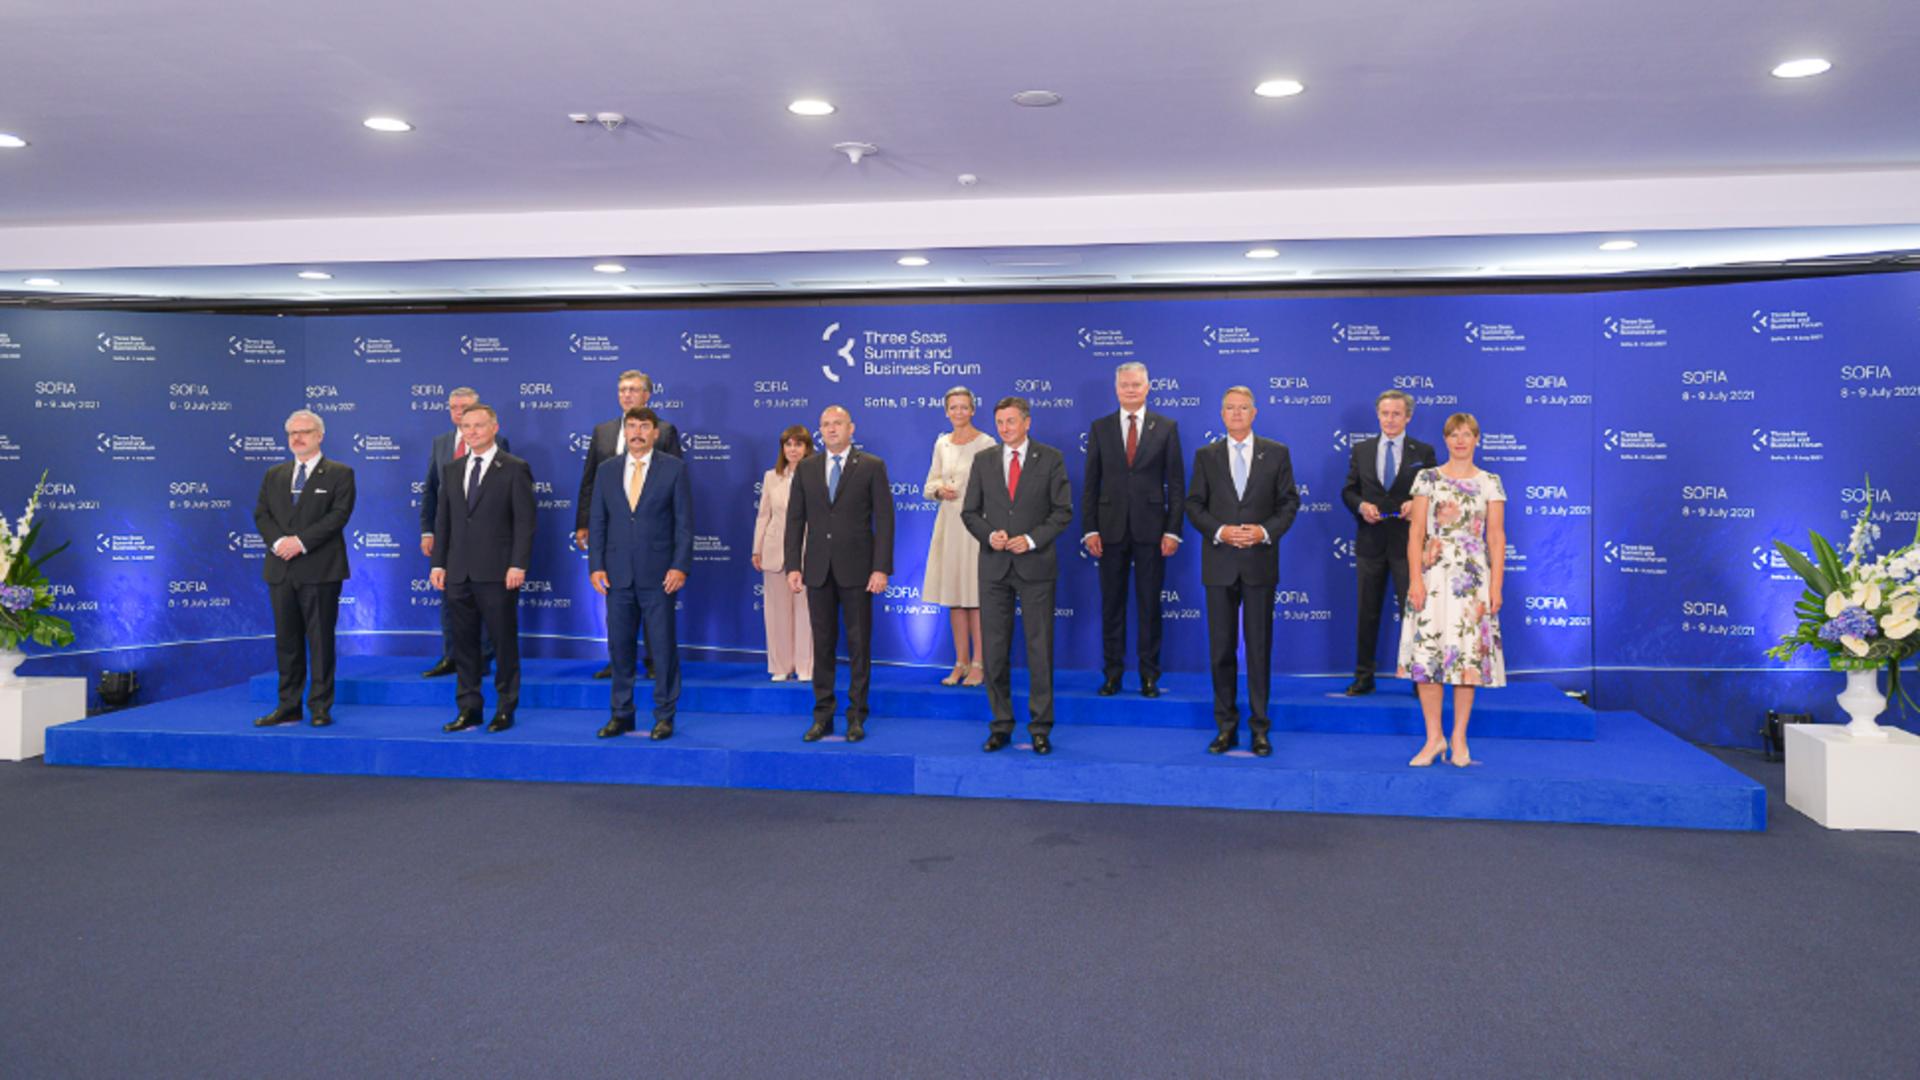 Președintele Iohannis susține reducerea decalajelor între statele din Estul și Centrul Europei. Foto/Administrația Prezidențială